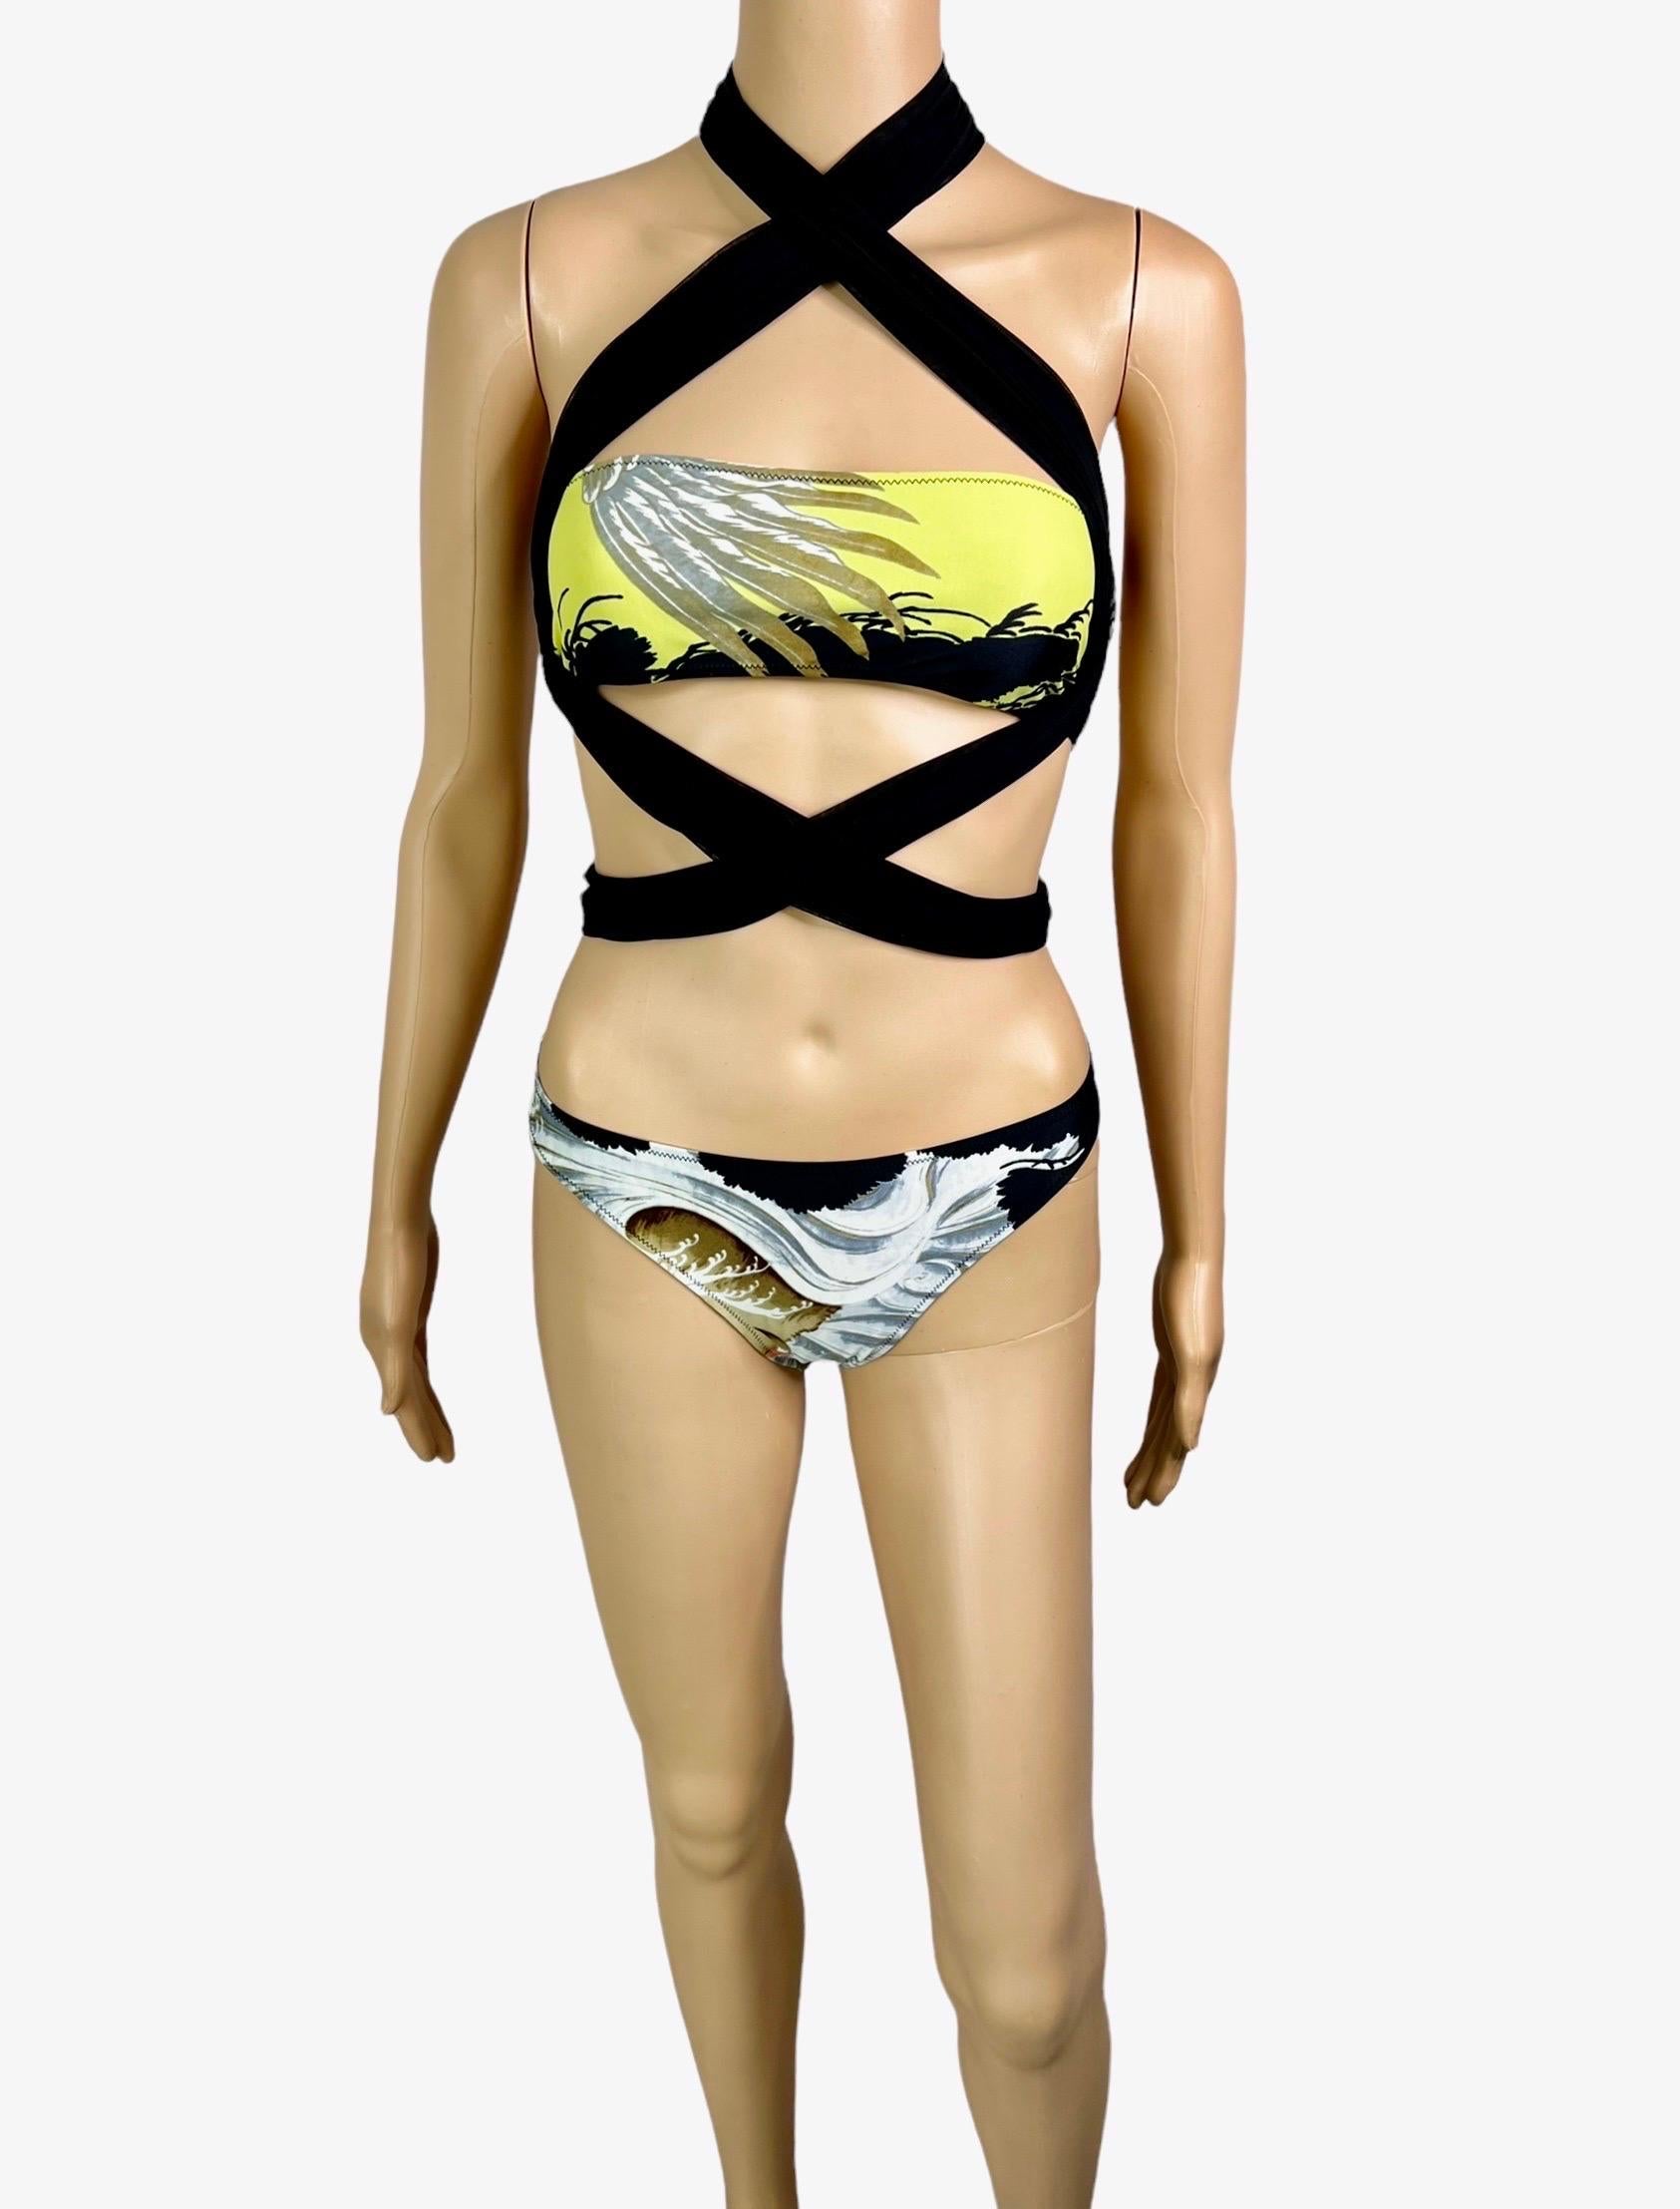 Jean Paul Gaultier Soleil Vintage Eagle Tattoo Print Bikini Swimwear Swimsuit 2 Piece Set Size M

Excellent état. Comme neuf.


